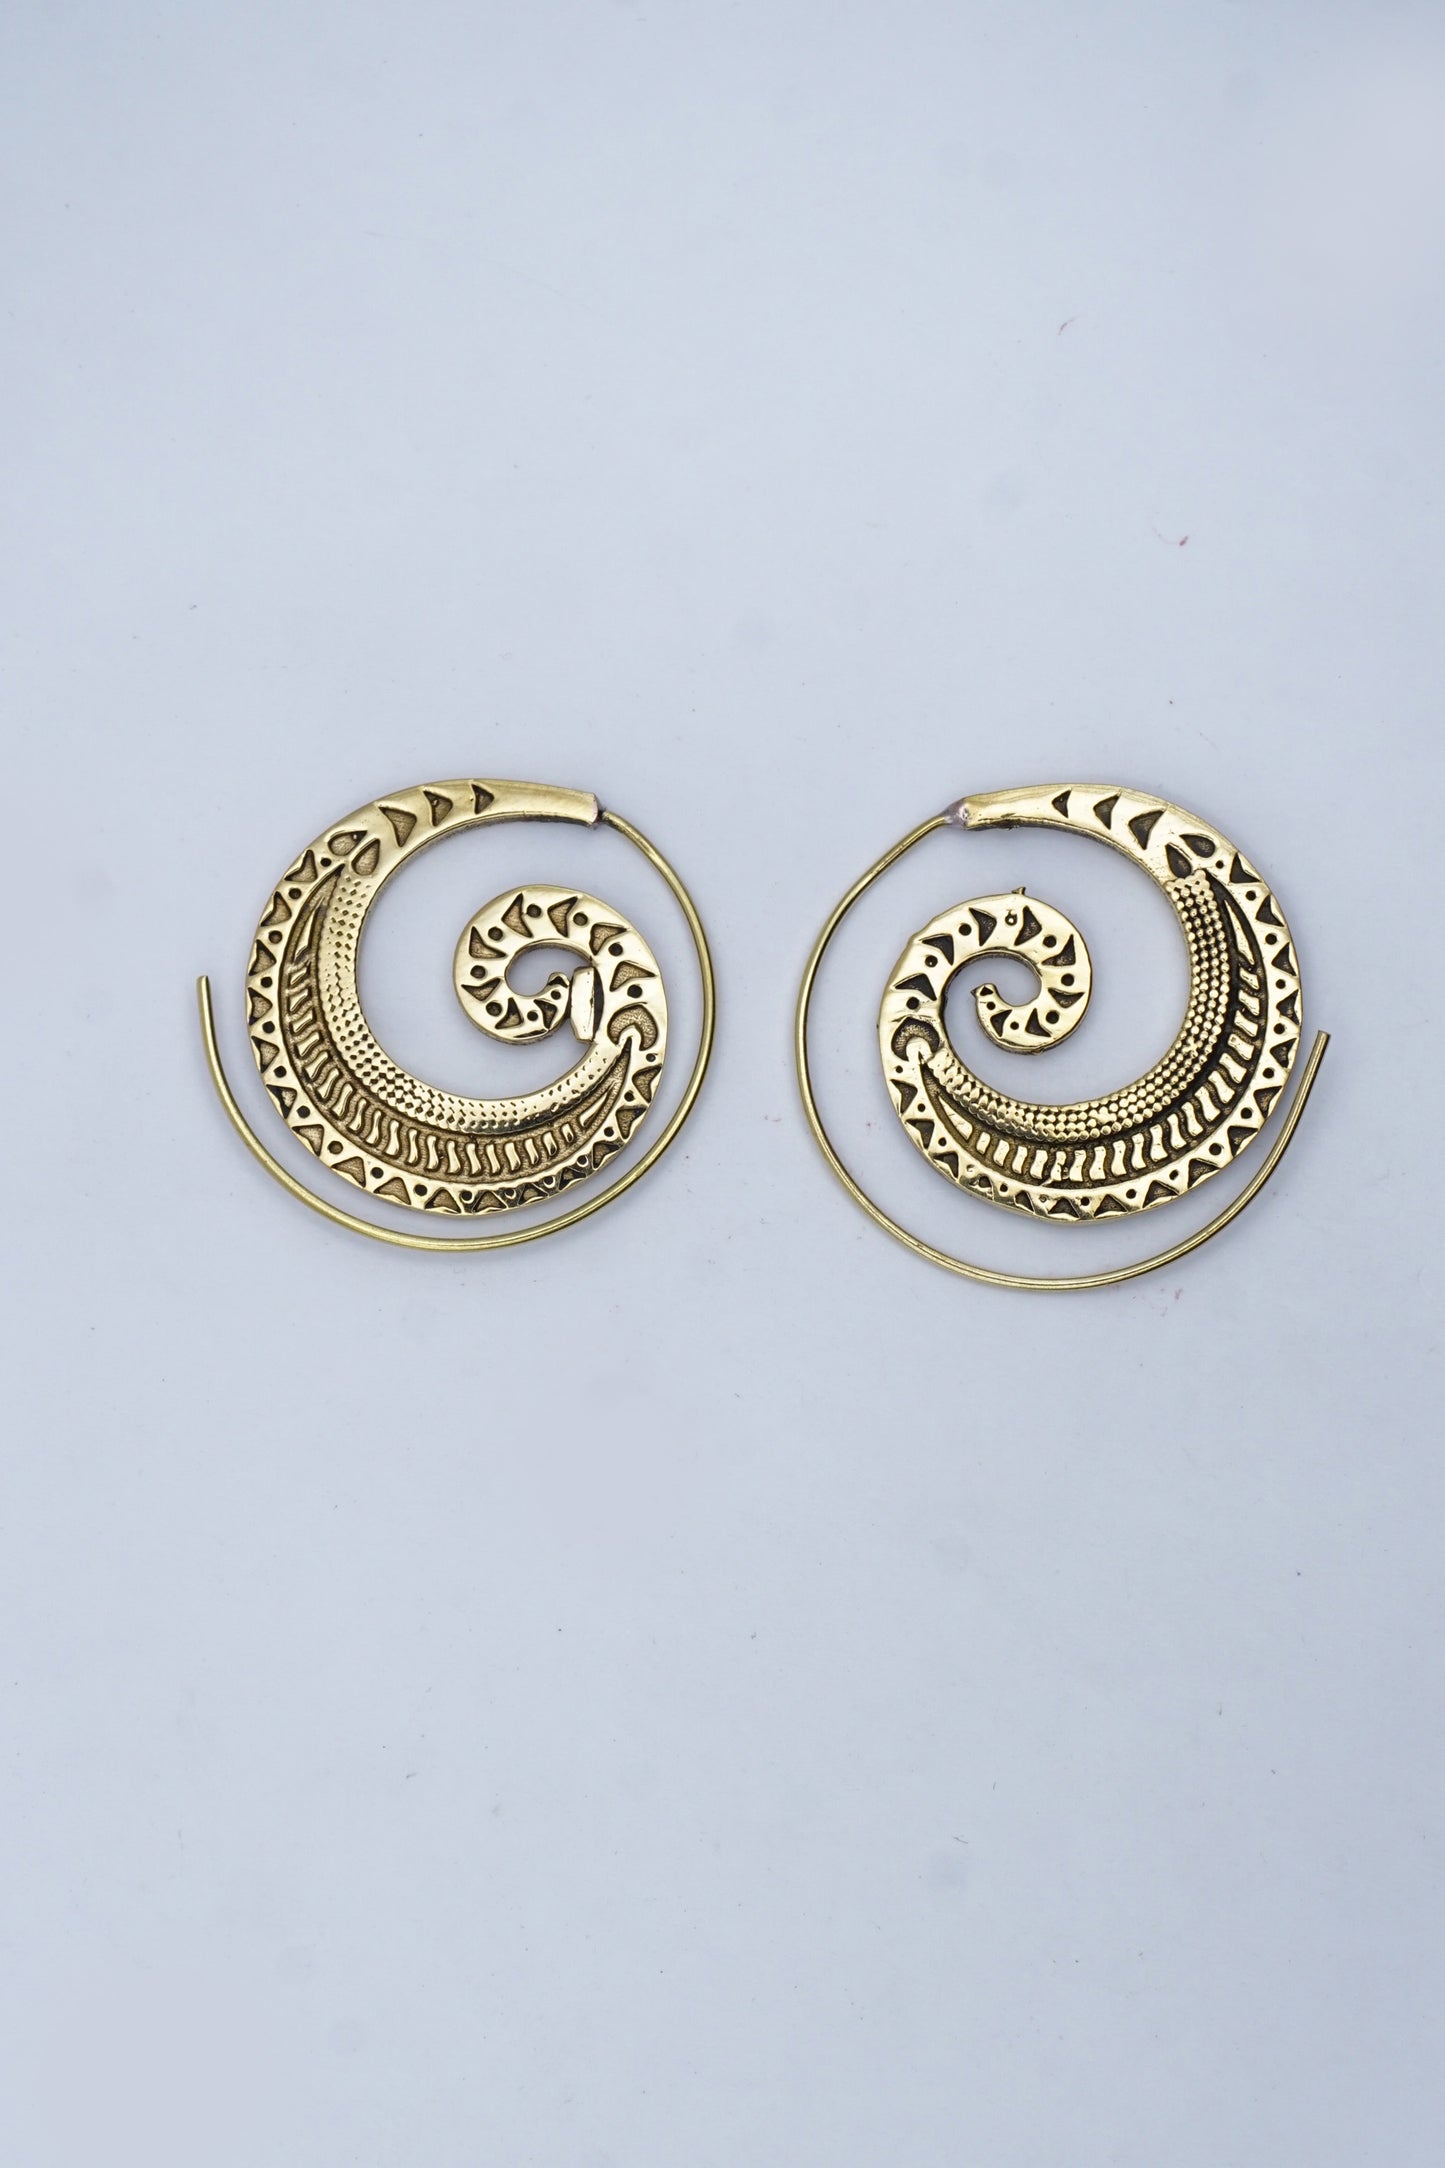 Detailed Spiral Earrings